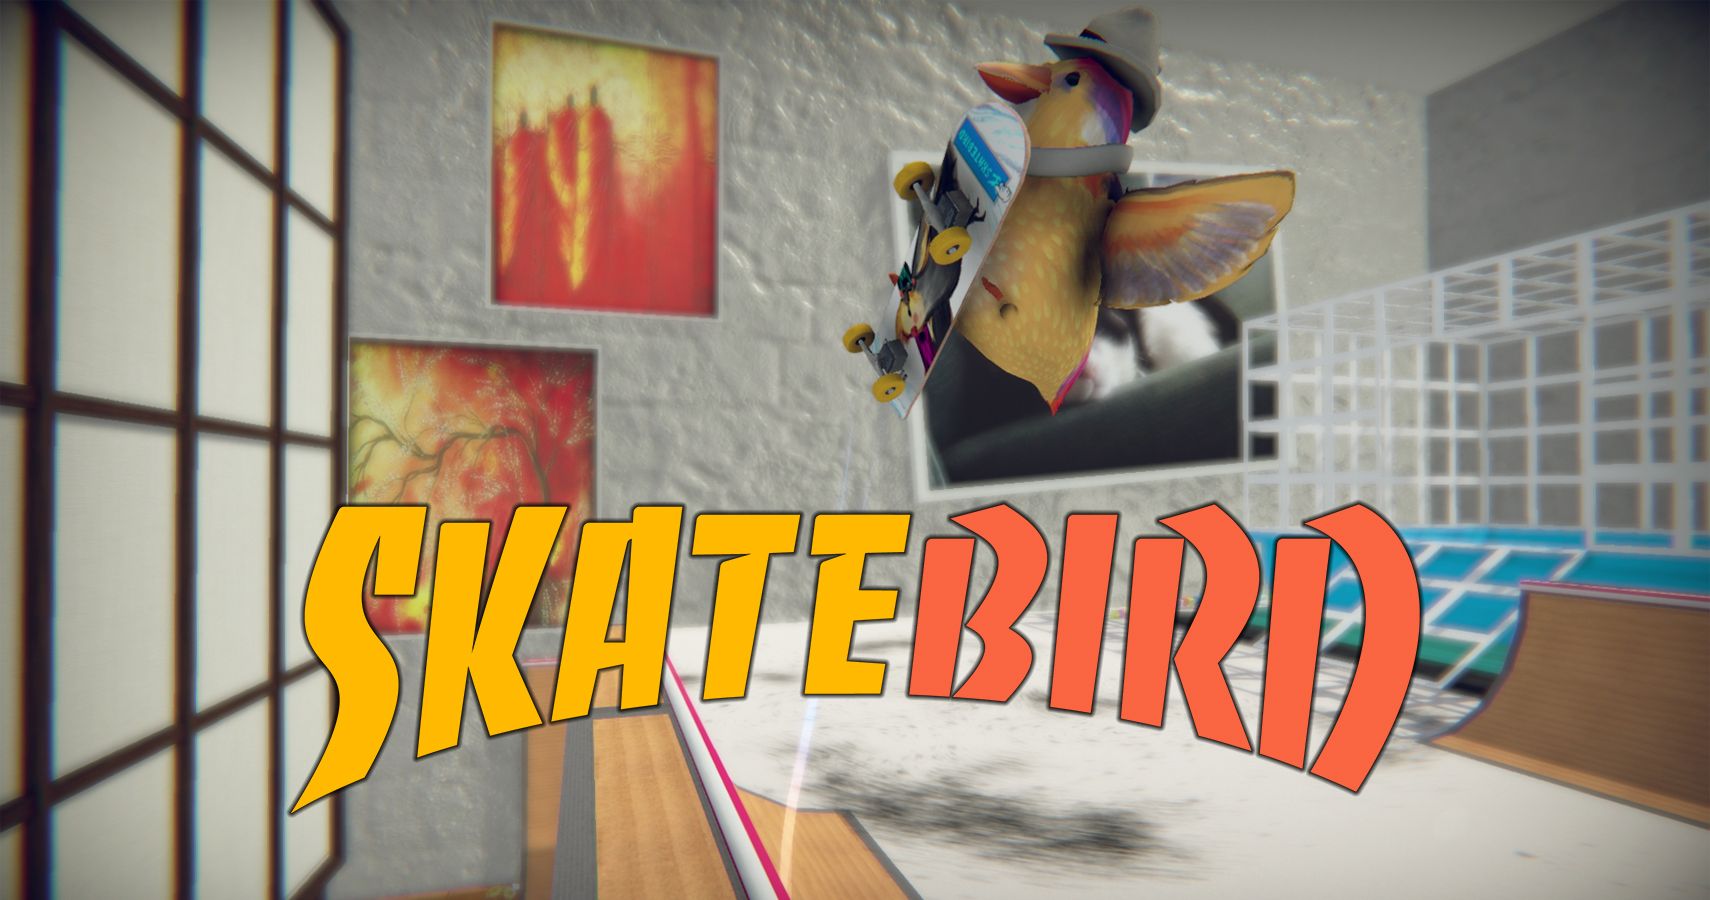 kickstarterer skatebird